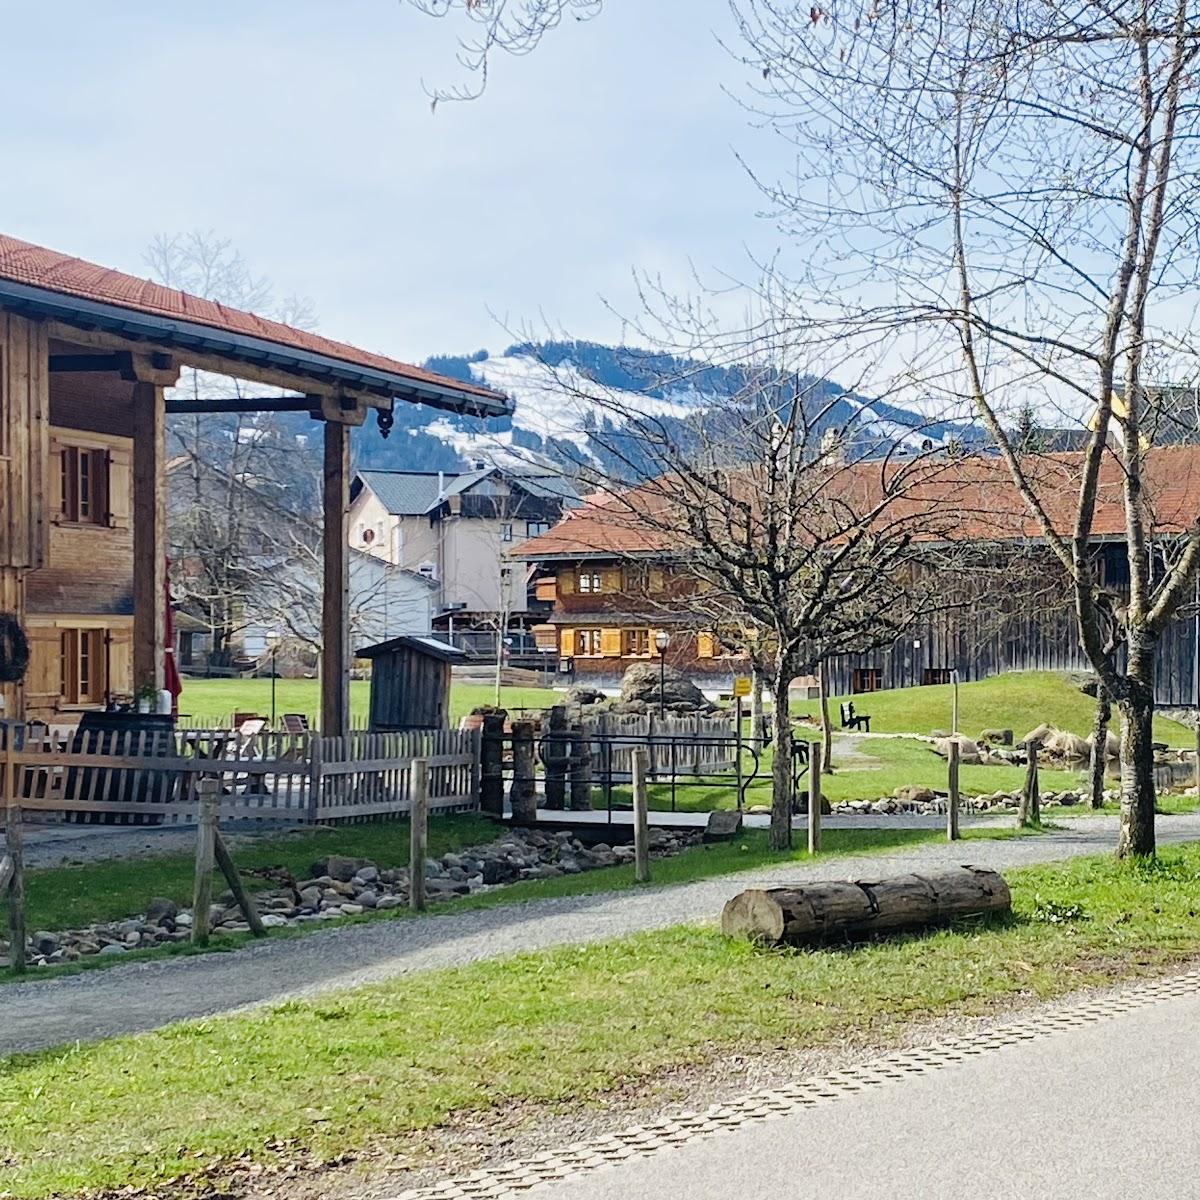 Restaurant "Kur- und Aktivhotel Allgäuer Hof" in Oberstaufen